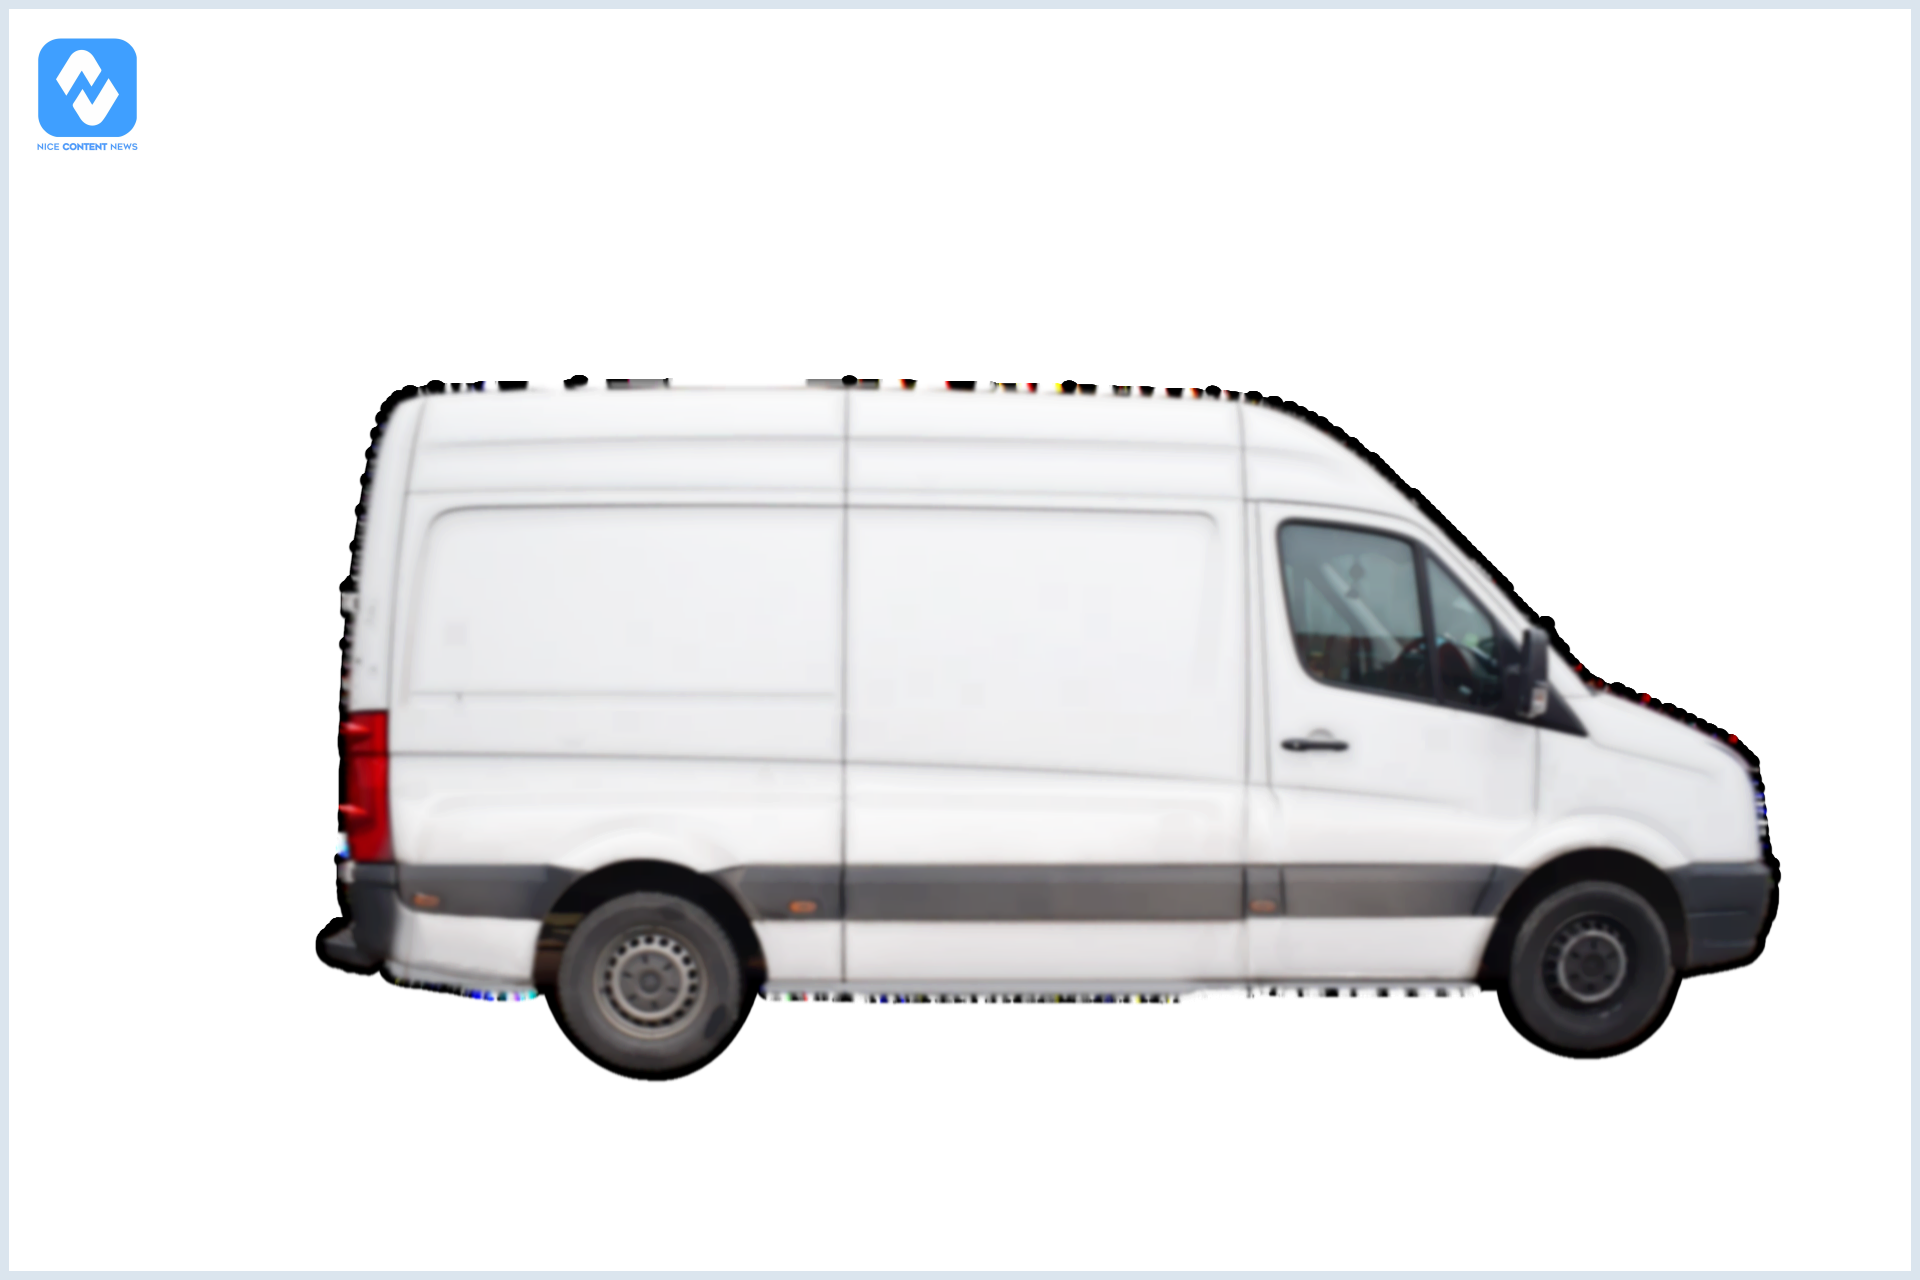 10 Razões para adquirir uma van para transporte de funcionários ou carga